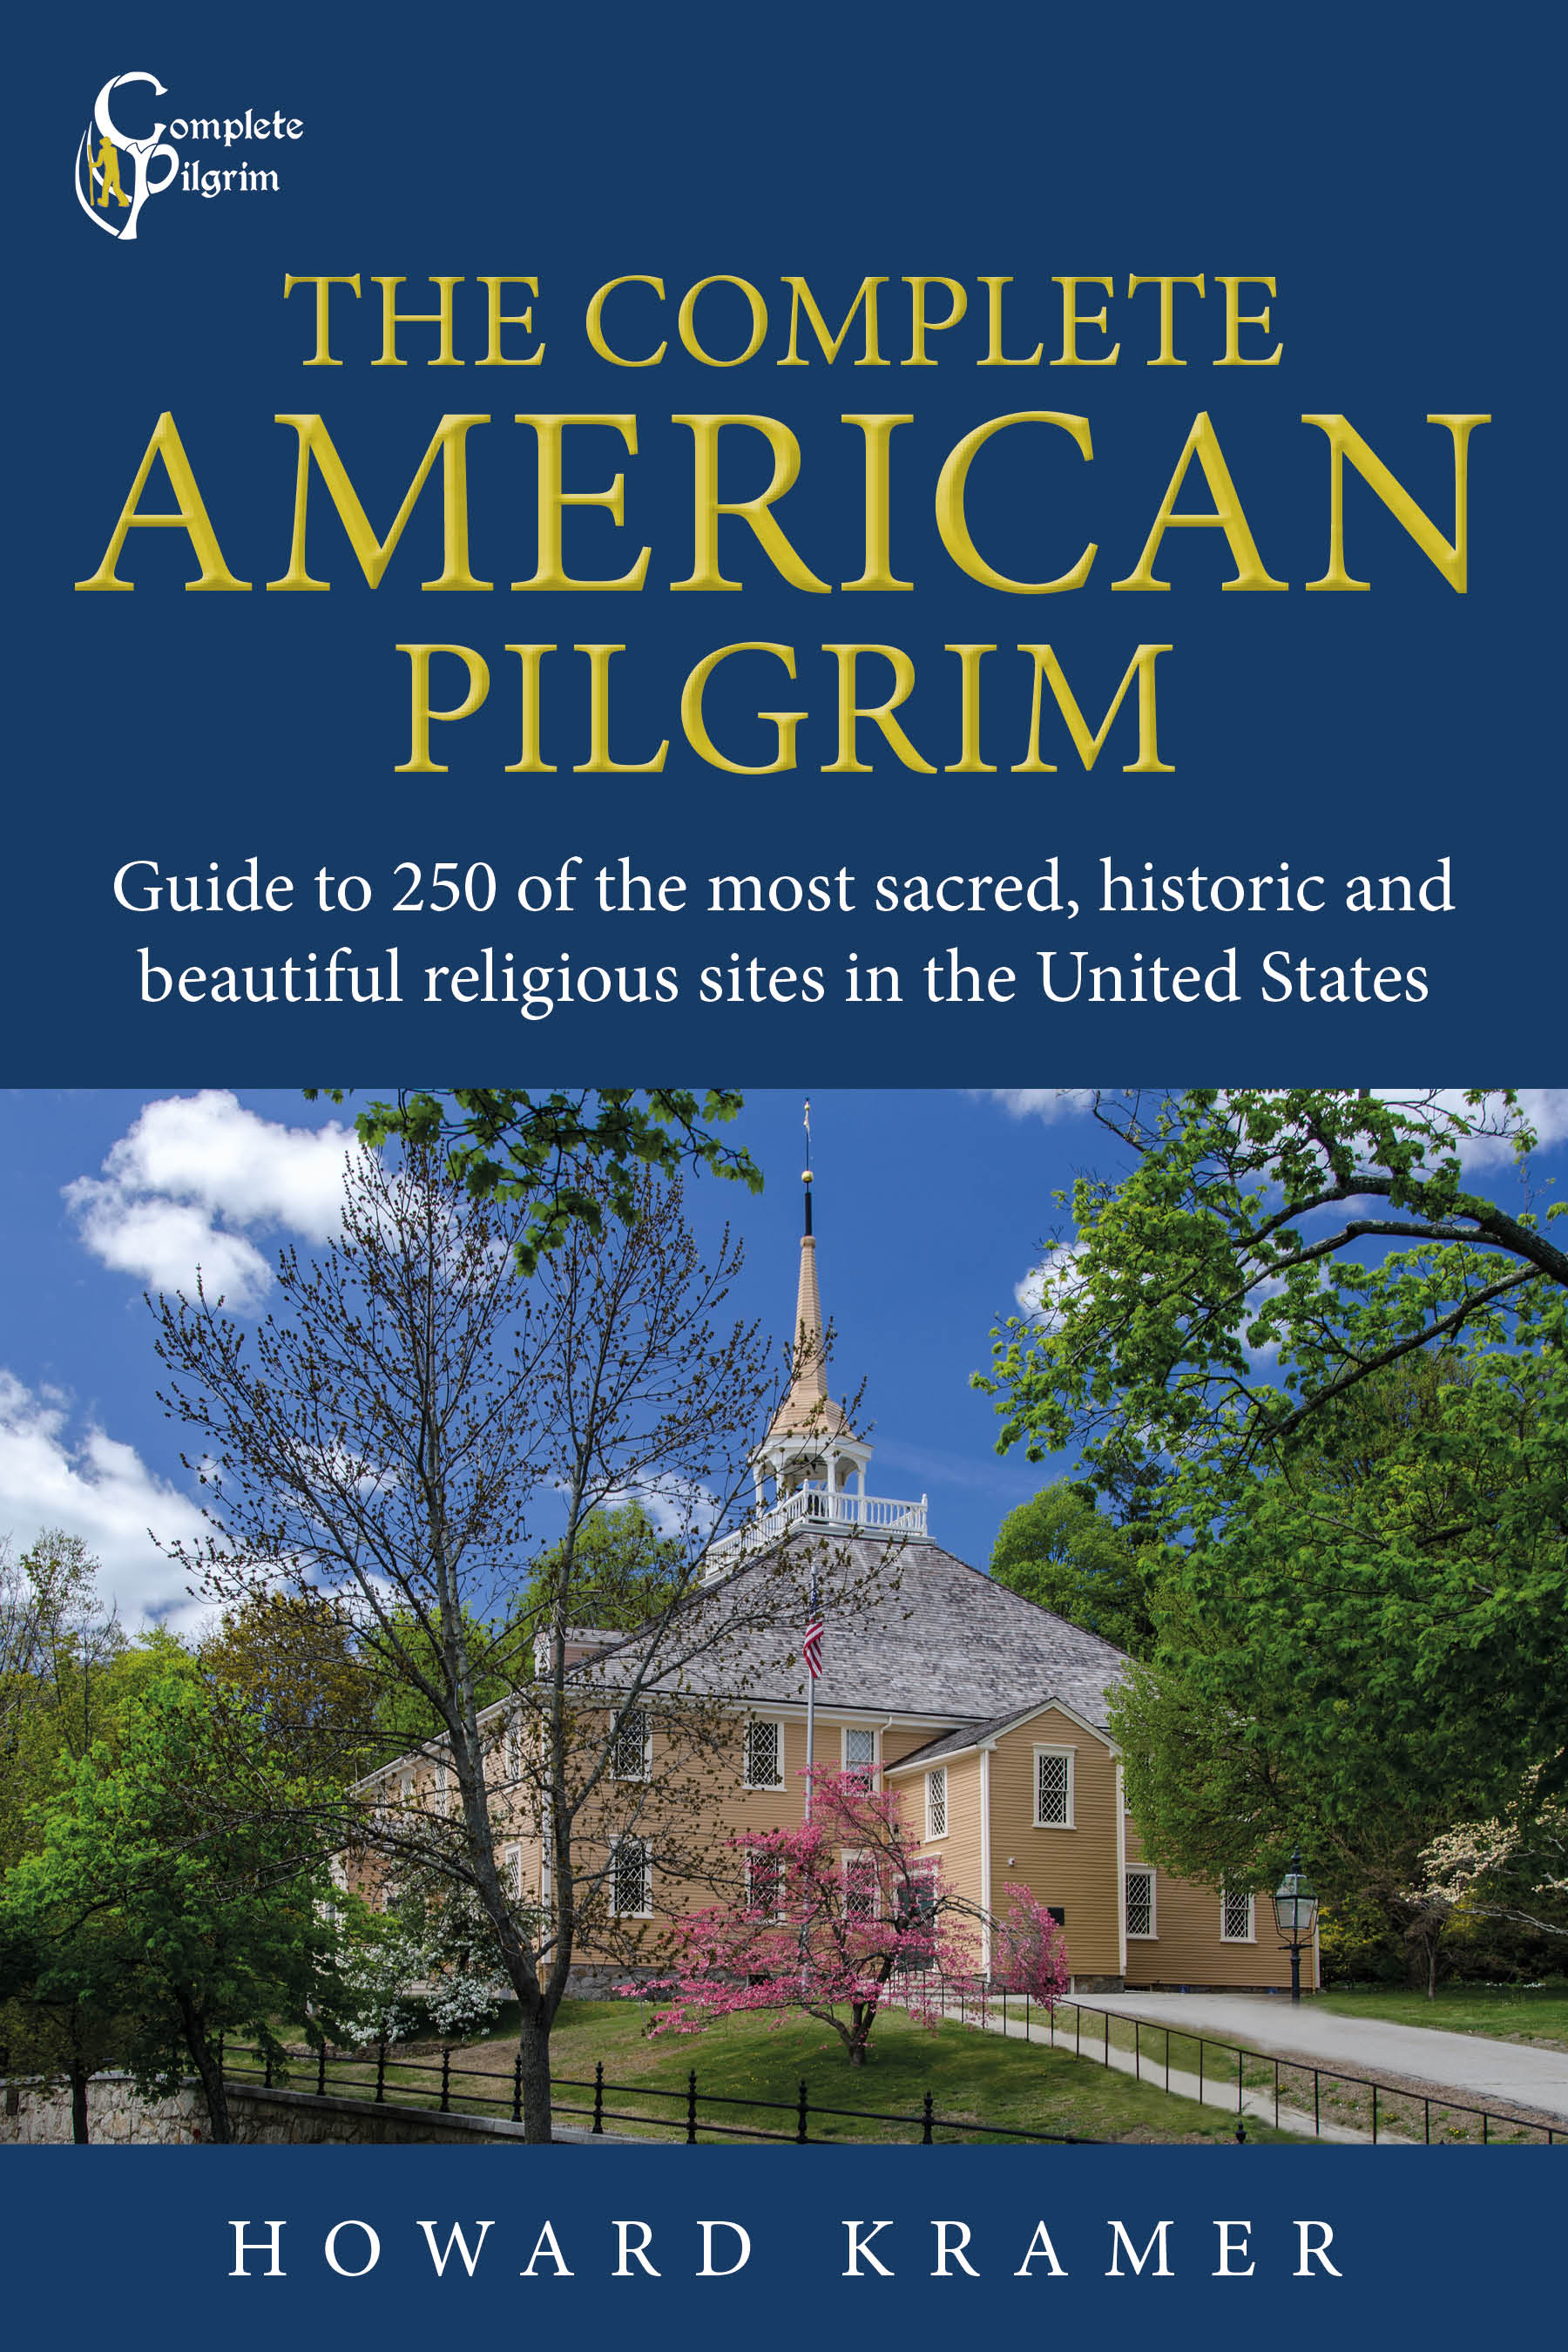 pilgrims in america